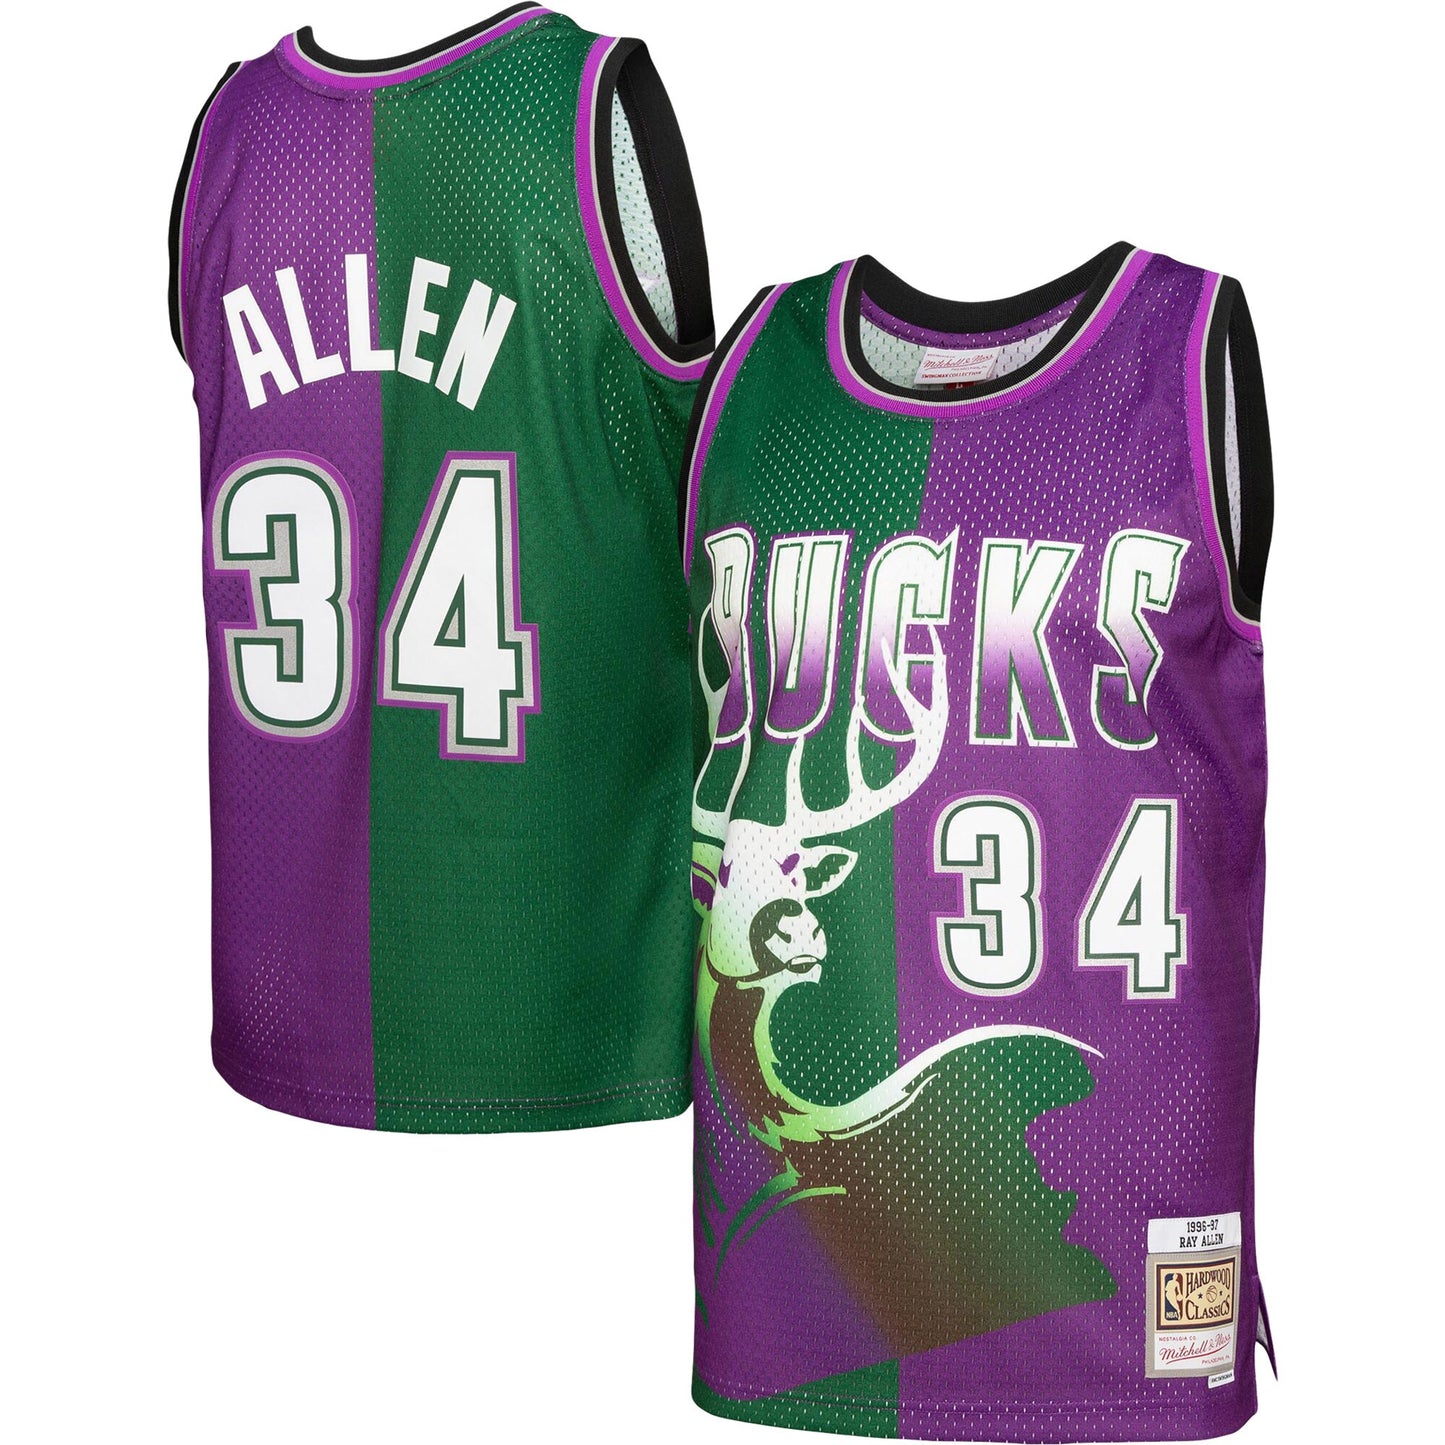 Ray Allen Milwaukee Bucks Mitchell & Ness Hardwood Classics 1996/97 Split Swingman Jersey - Green/Purple